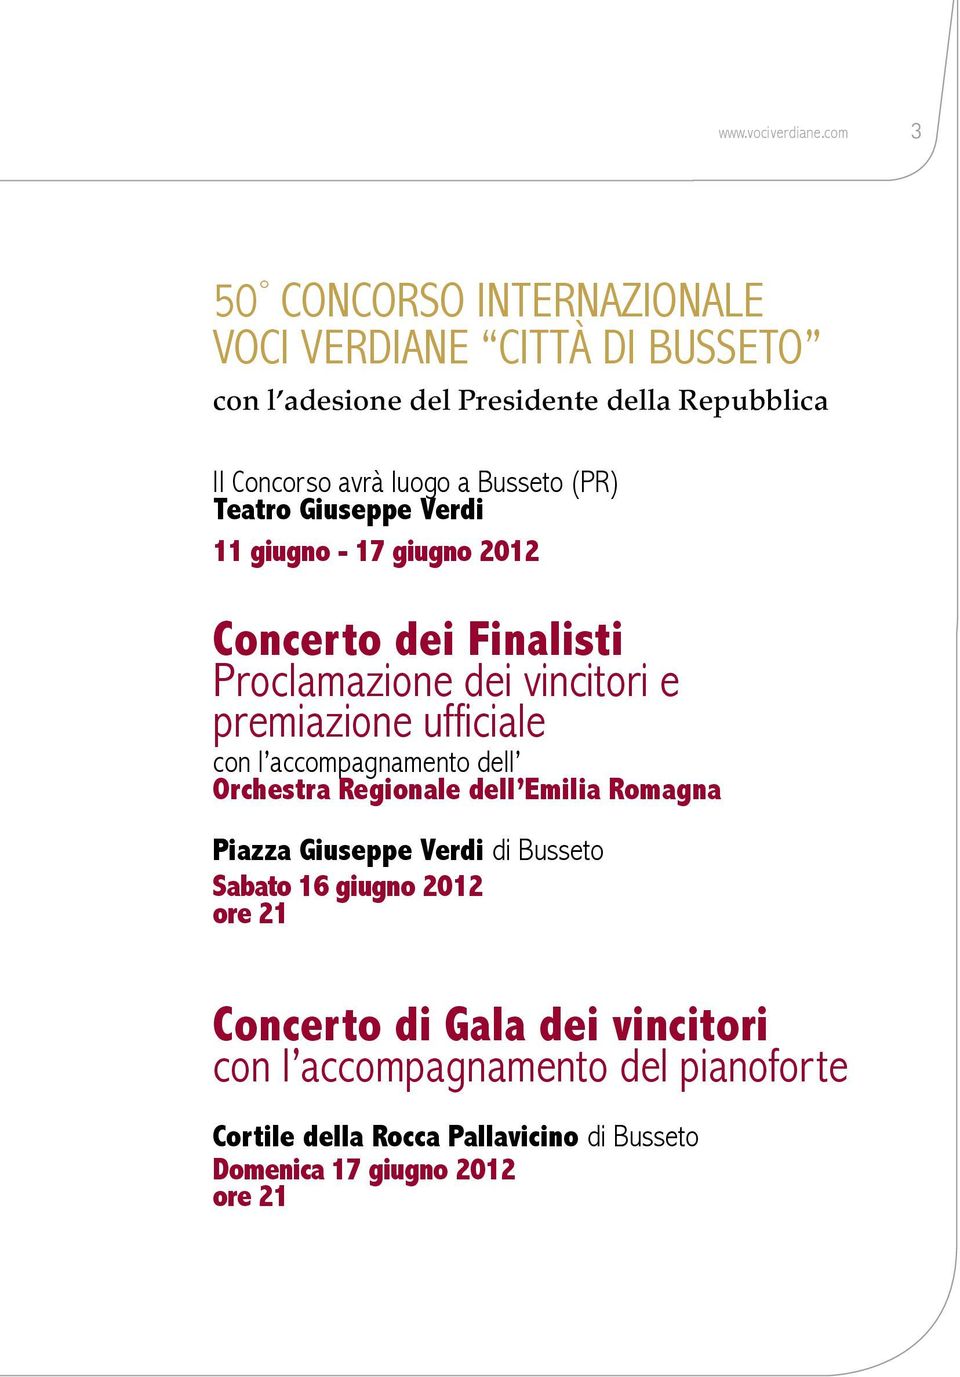 Busseto (PR) Teatro Giuseppe Verdi 11 giugno - 17 giugno 2012 Concerto dei Finalisti Proclamazione dei vincitori e premiazione ufficiale